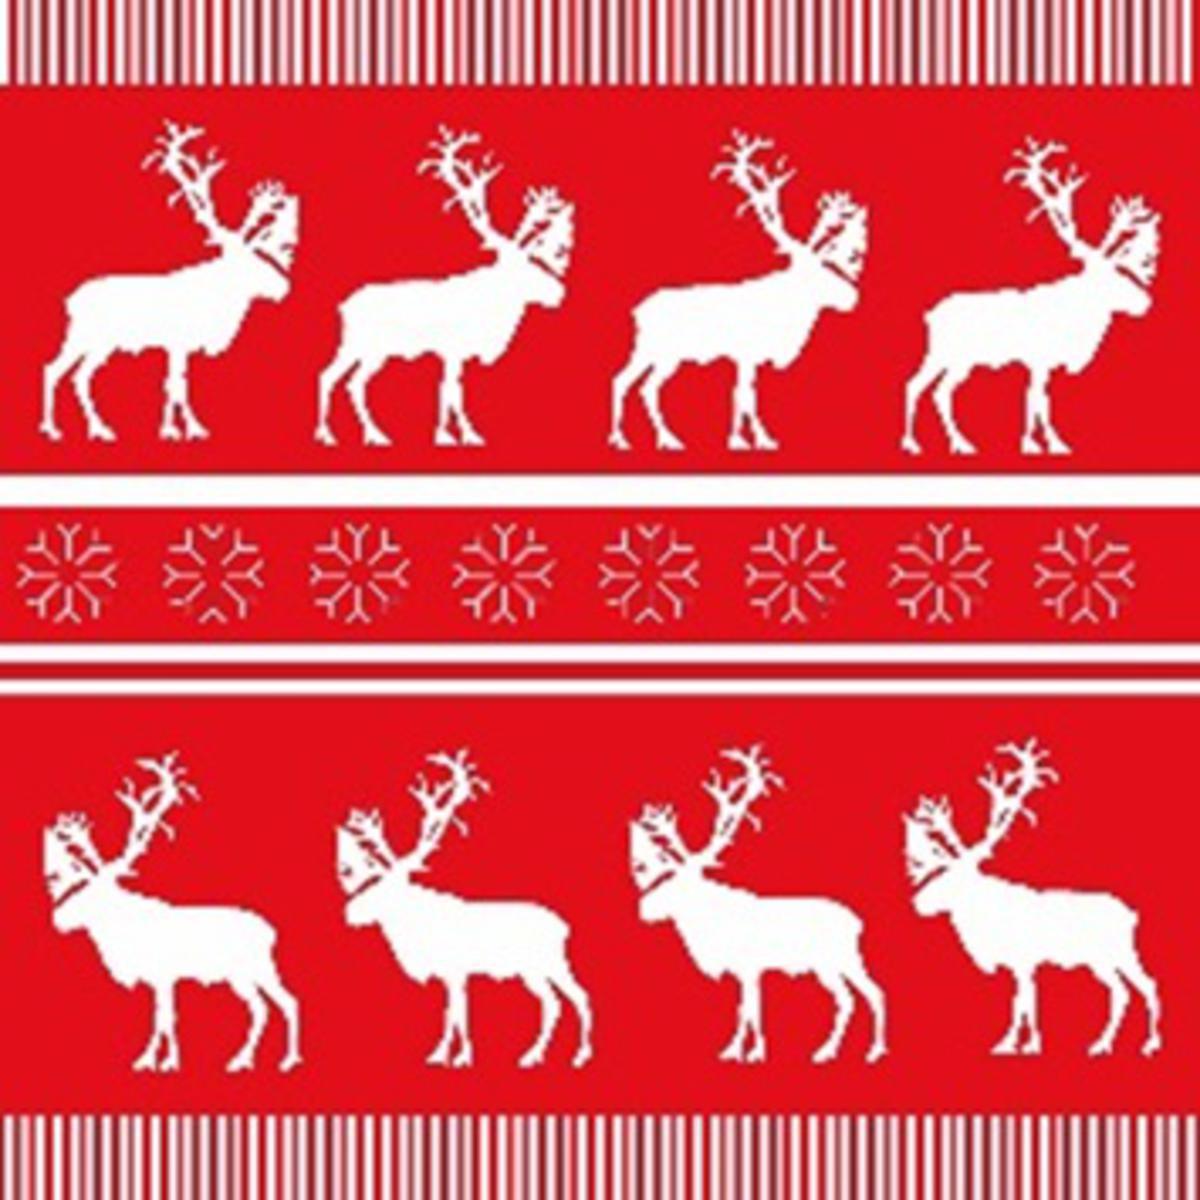 Lot de 20 serviettes imprimées caribou - Papier - 33 x 33 cm - Blanc et rouge